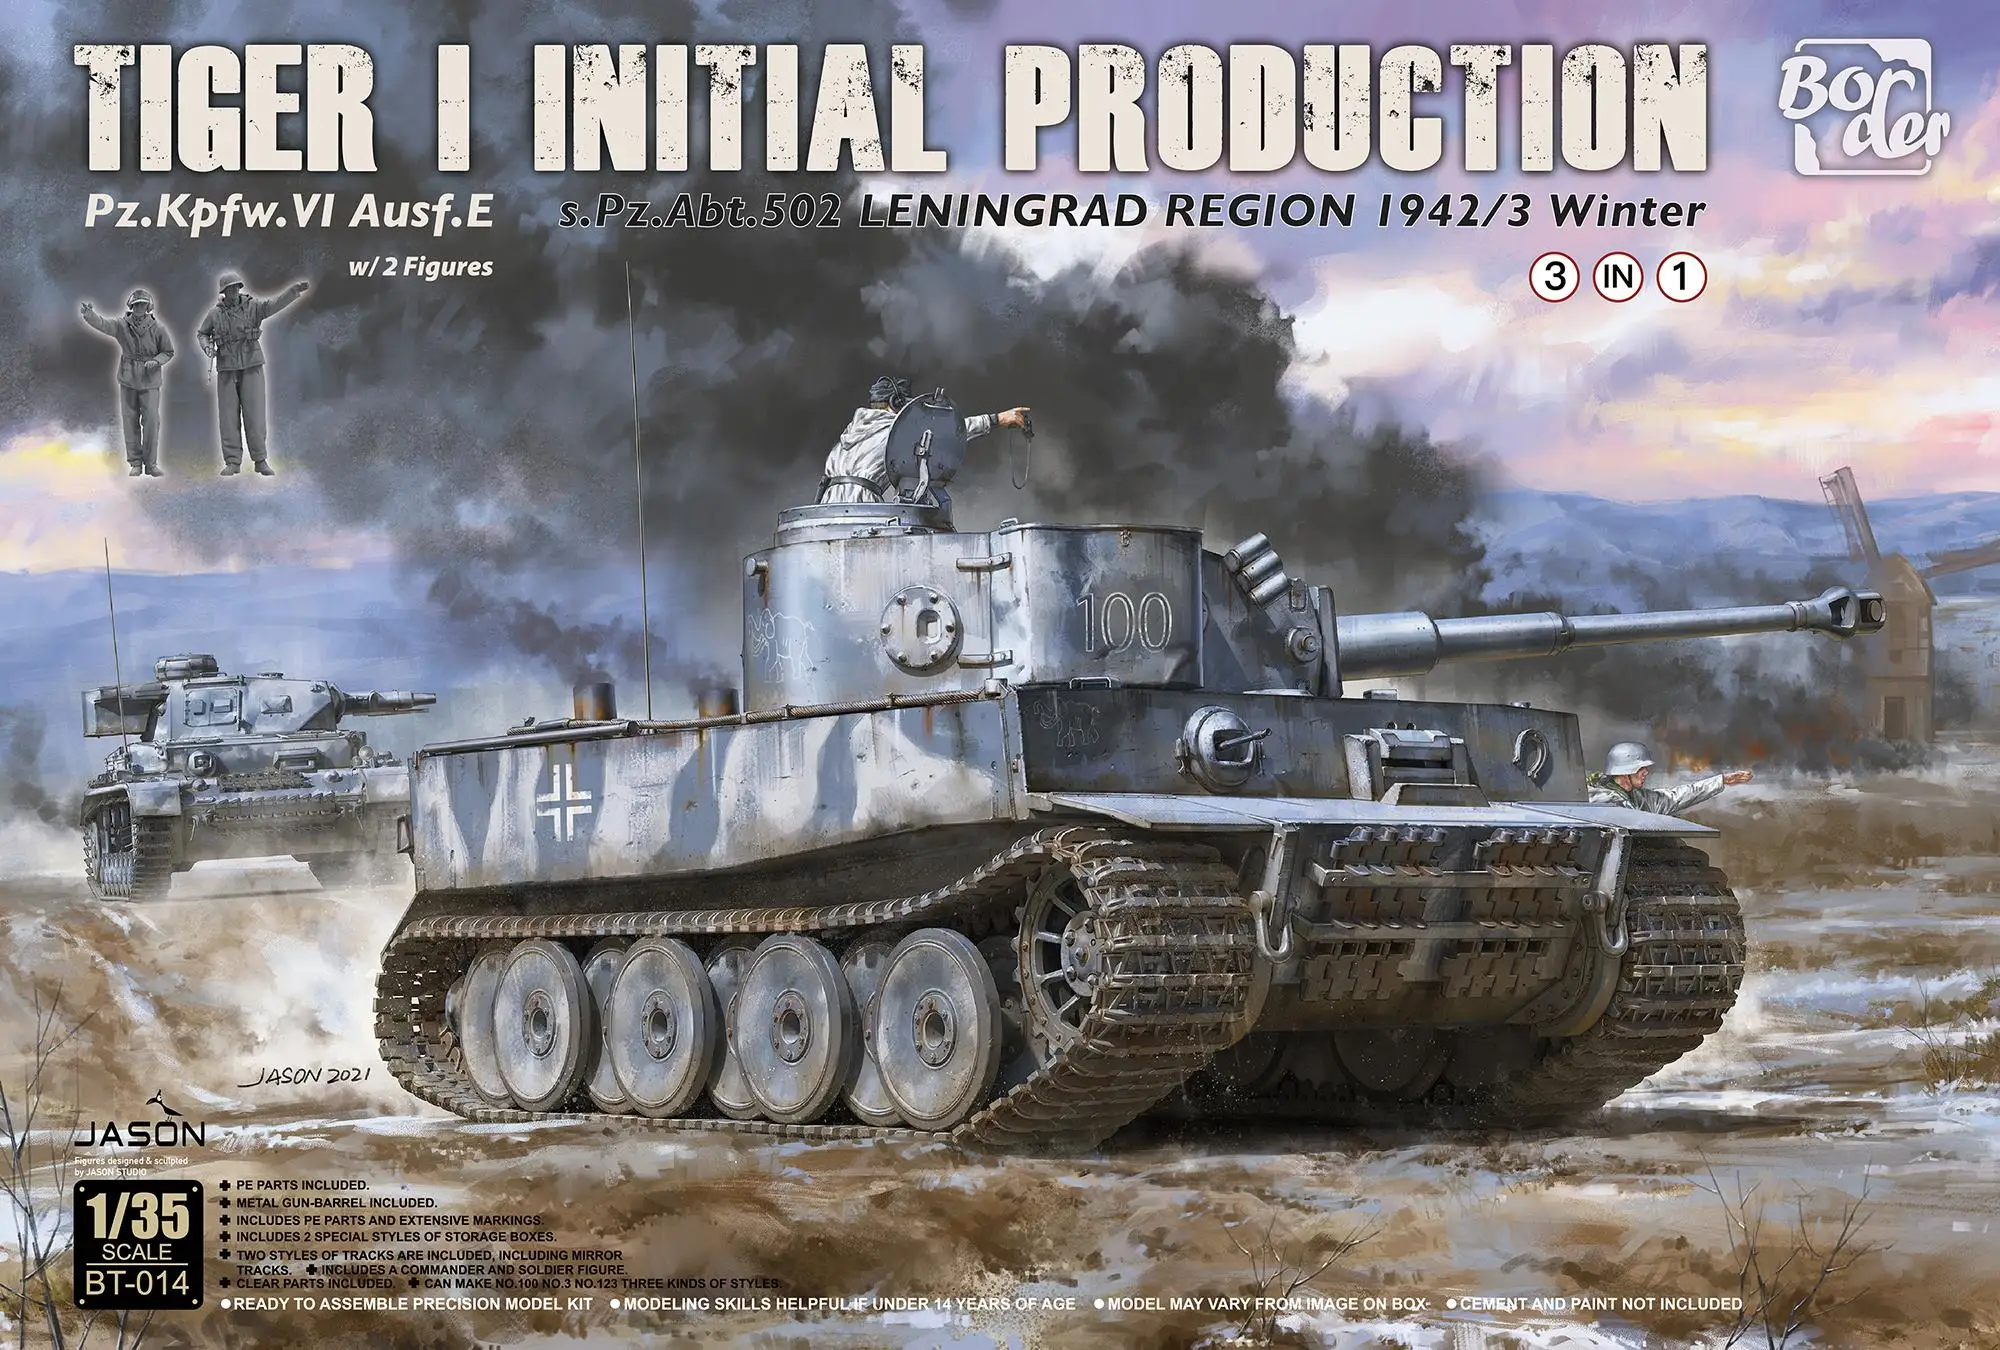 Border BT014 Tiger I Начального производства s.Pz.Abt.502 Ленинградской области 1942/43 BT-014